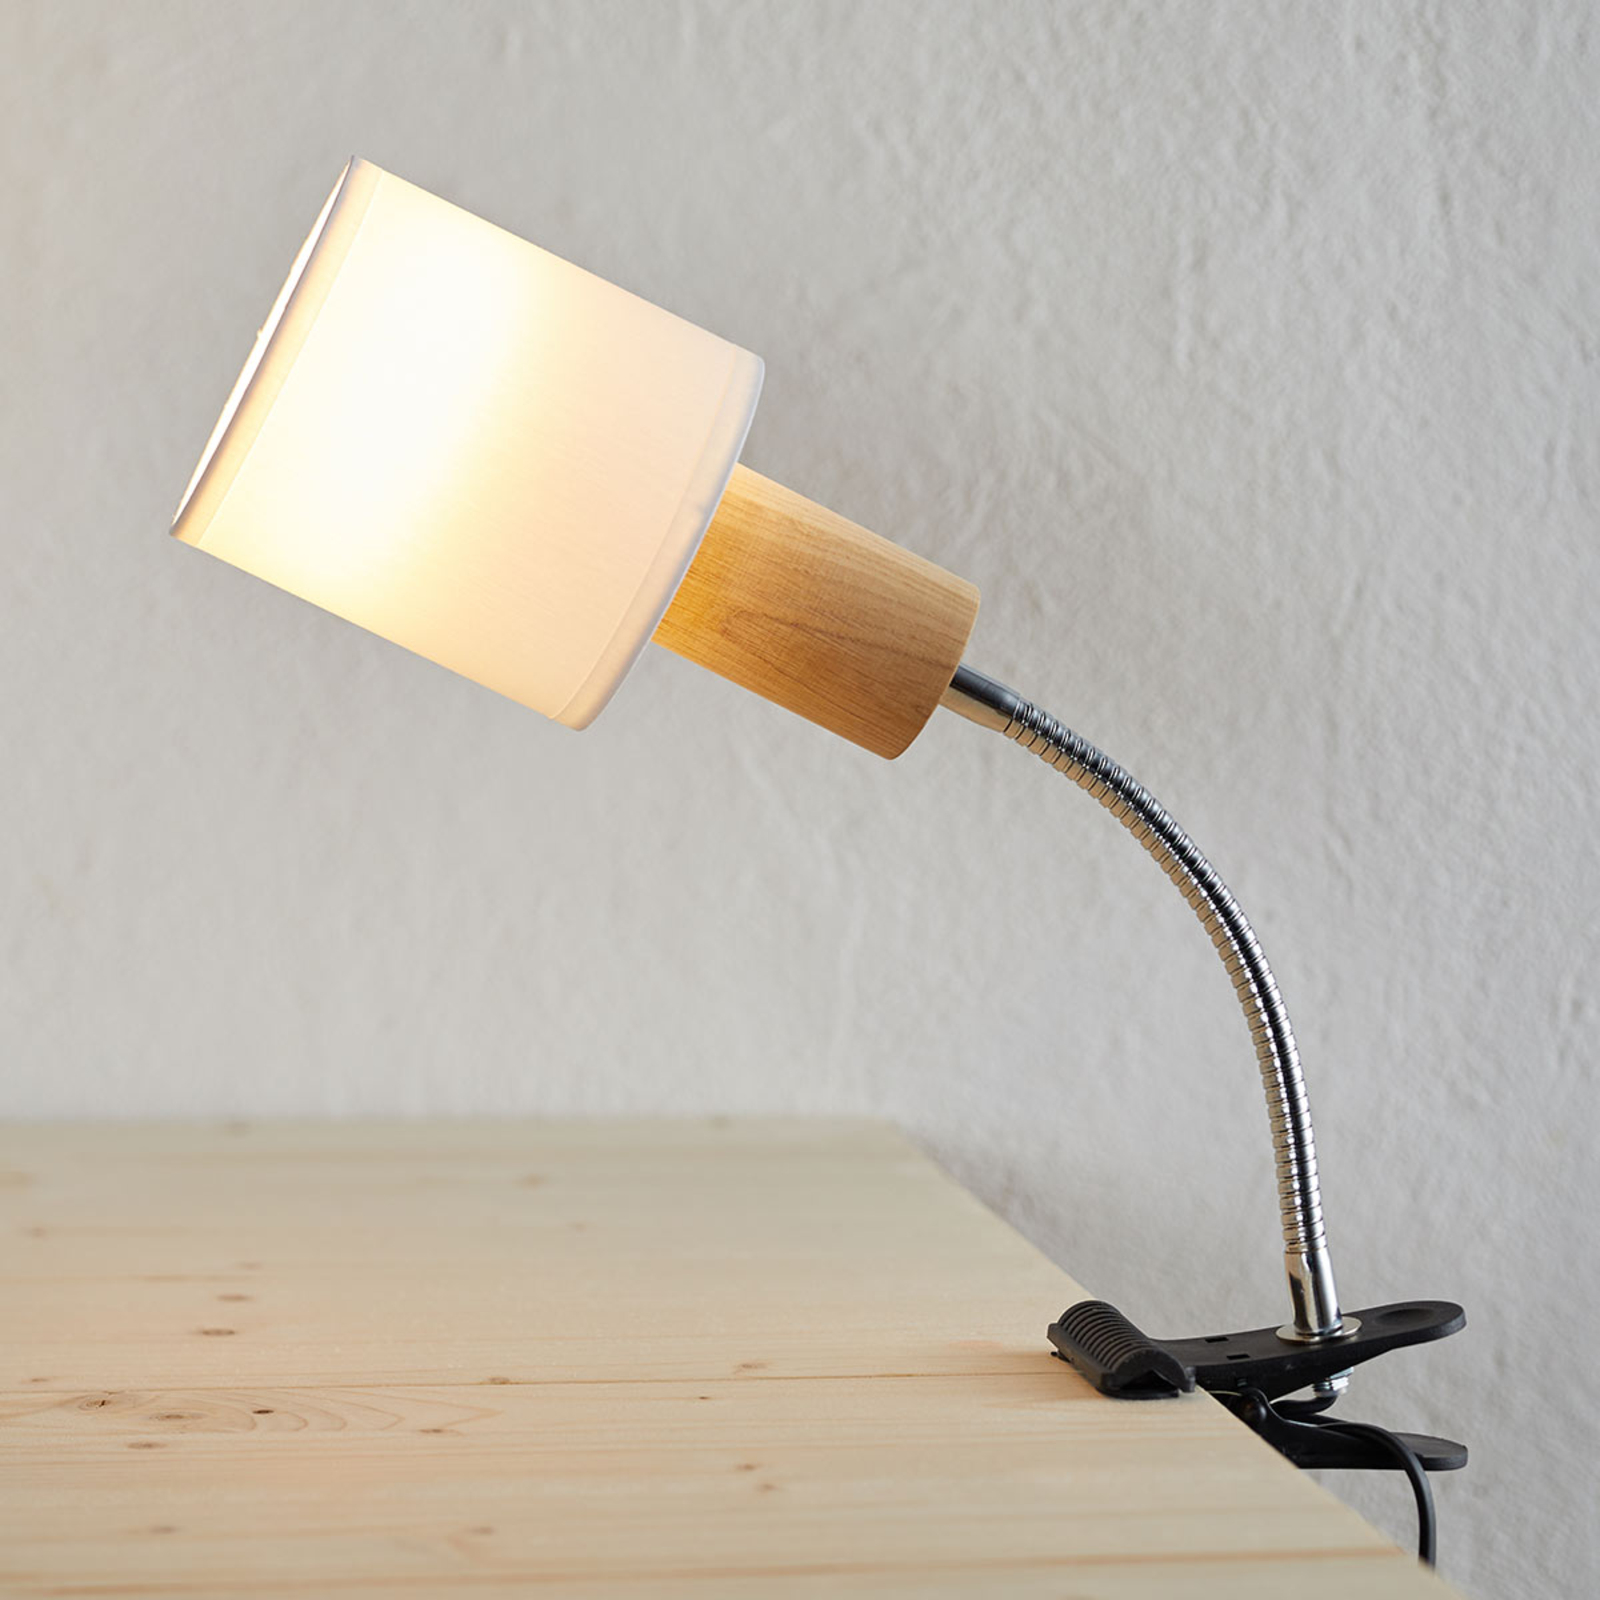 DEL Lampe de serrage mobile Spot Lampe Chambre Eclairage Projecteur Gris 